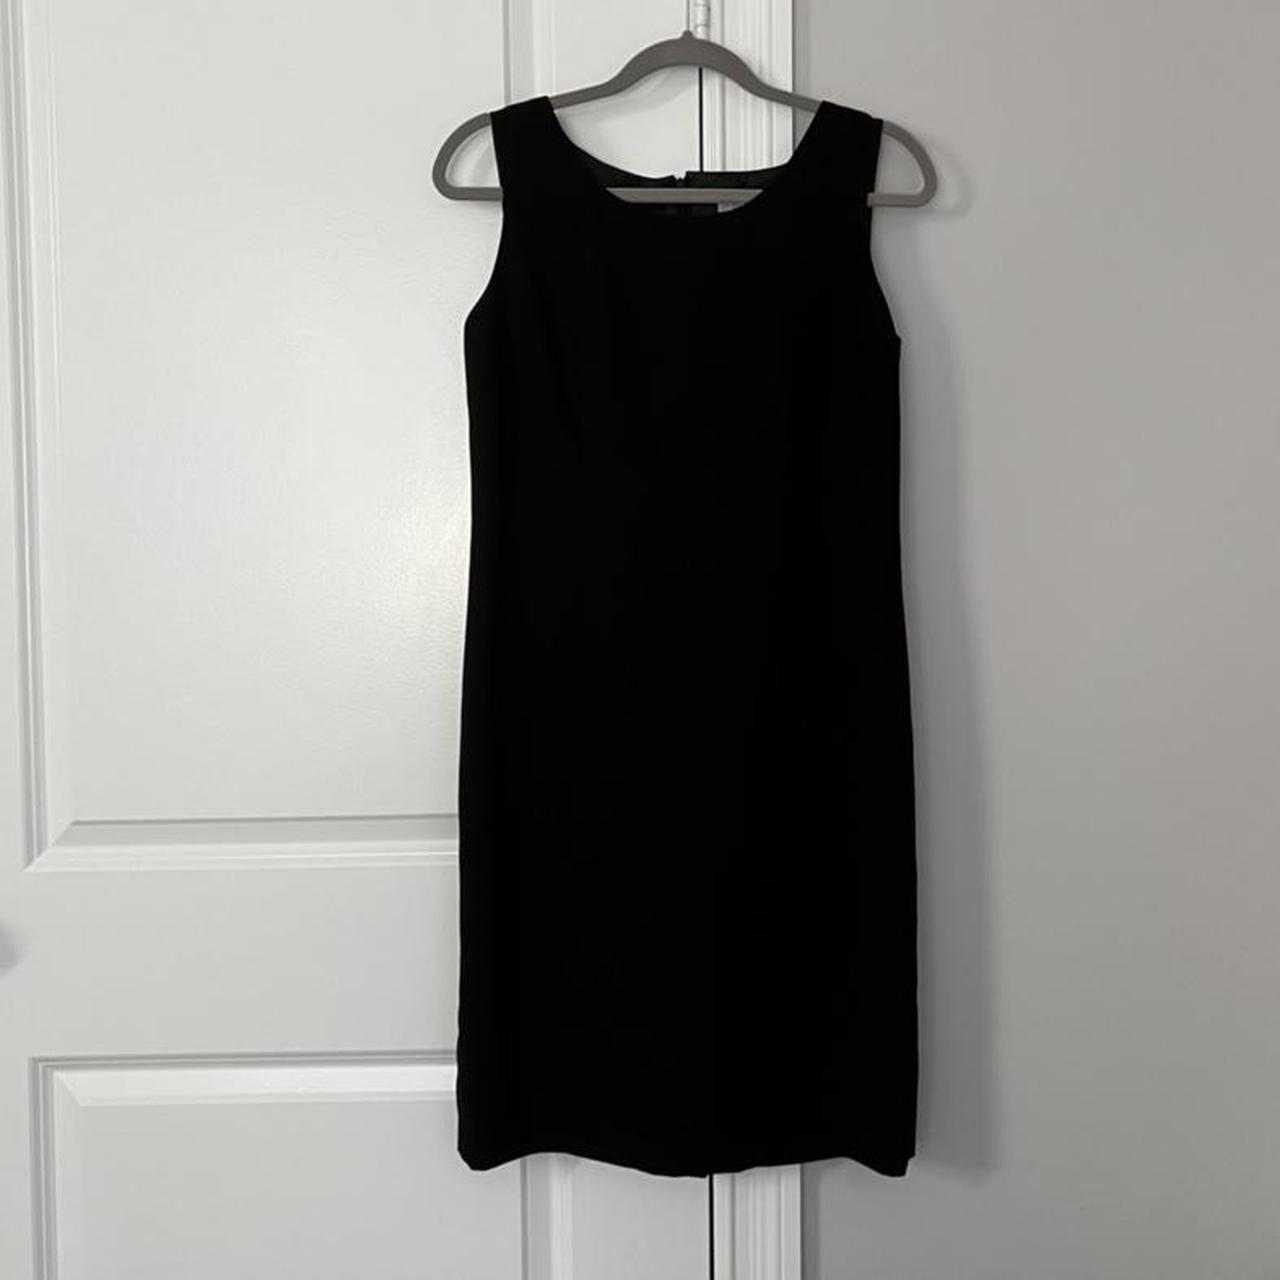 Le Suit Women's Black Dress | Depop